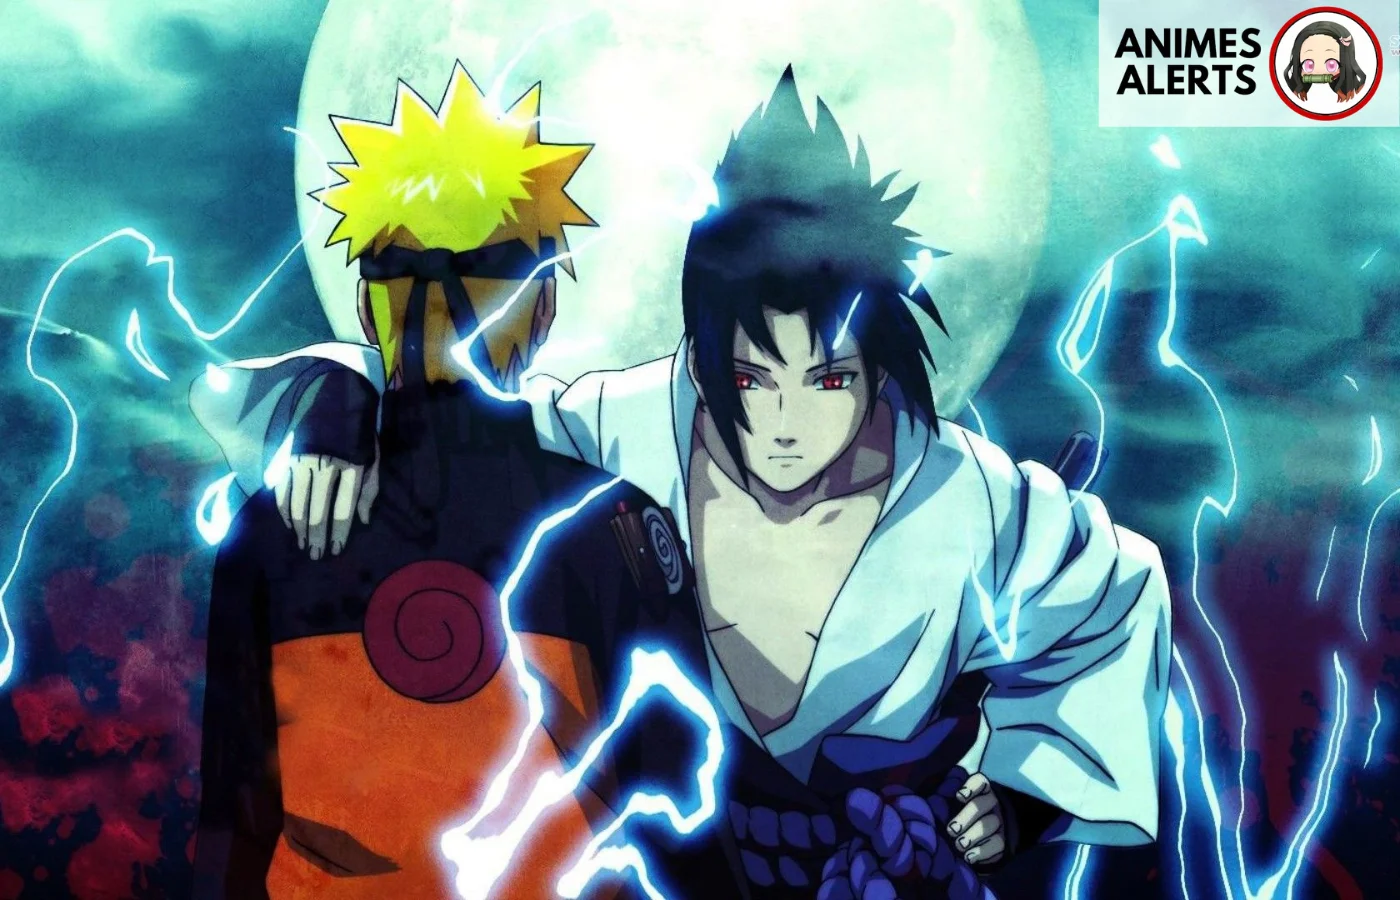 Sasuke and Naruto (Naruto)